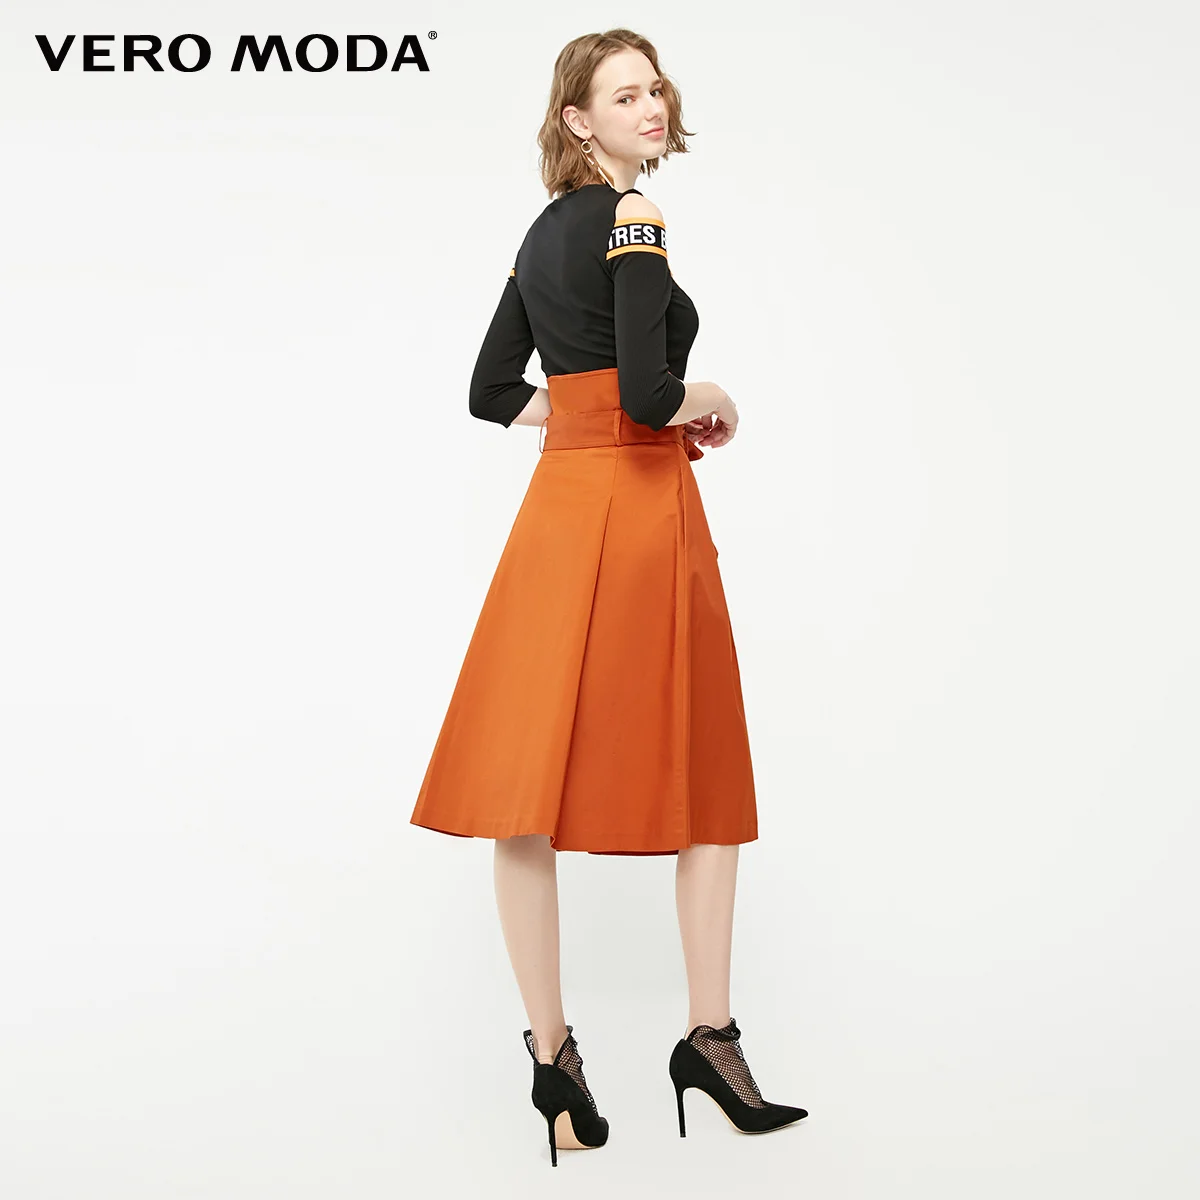 Vero Moda женский уличный стиль двубортная юбка с высокой посадкой | 319116554